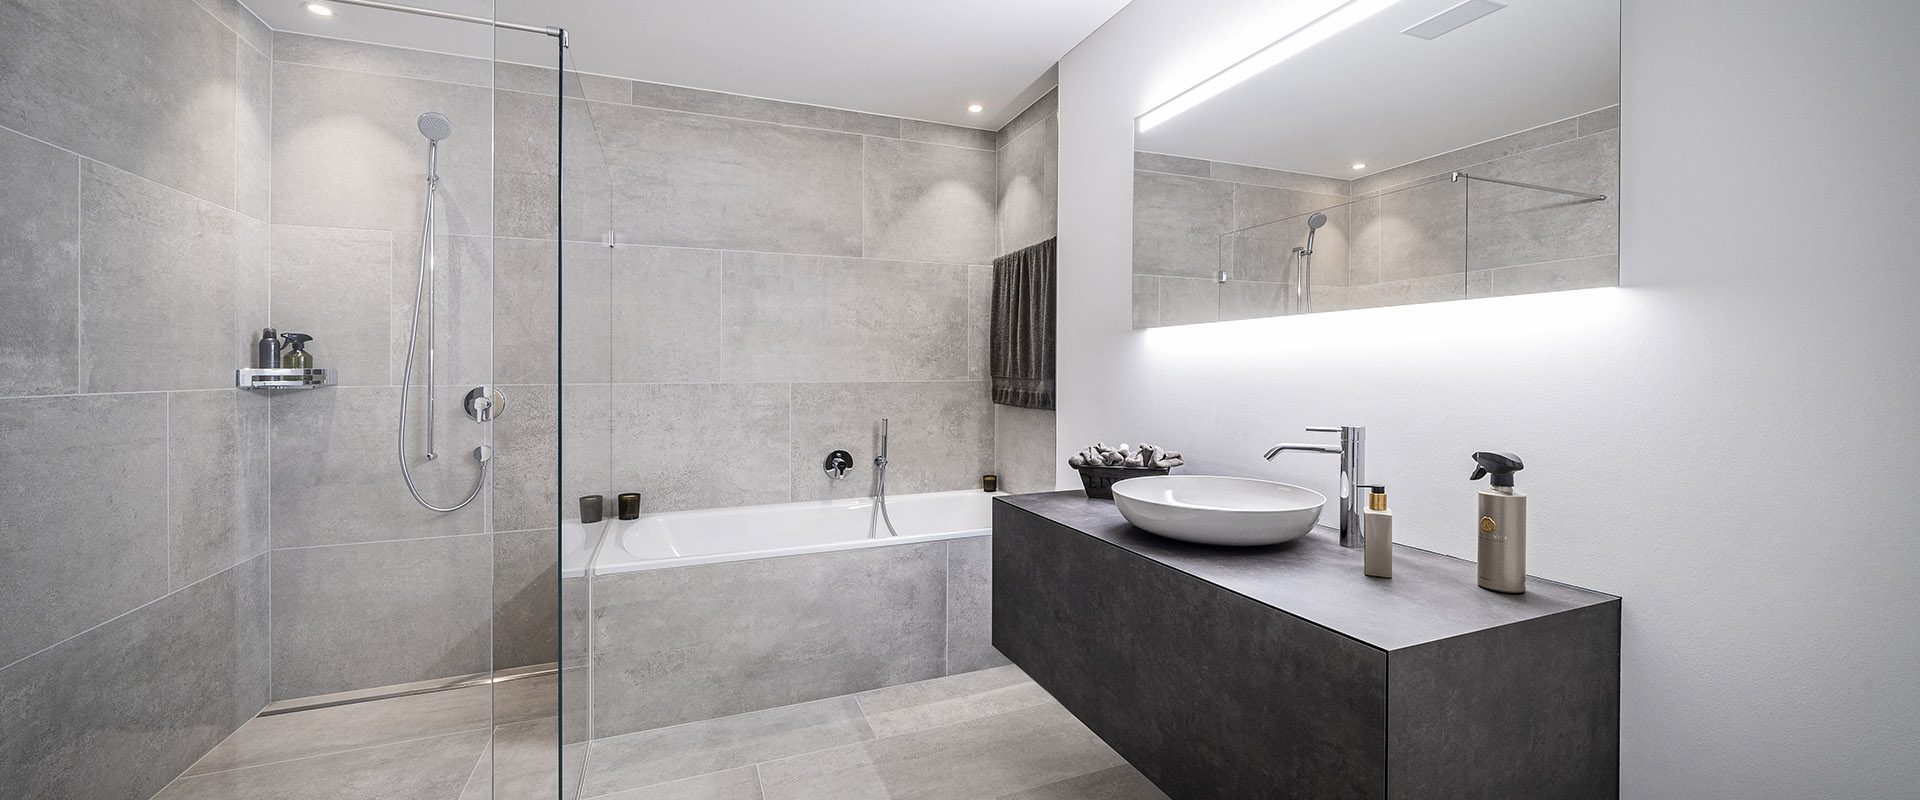 Modernes Badezimmer mit grauen Platten